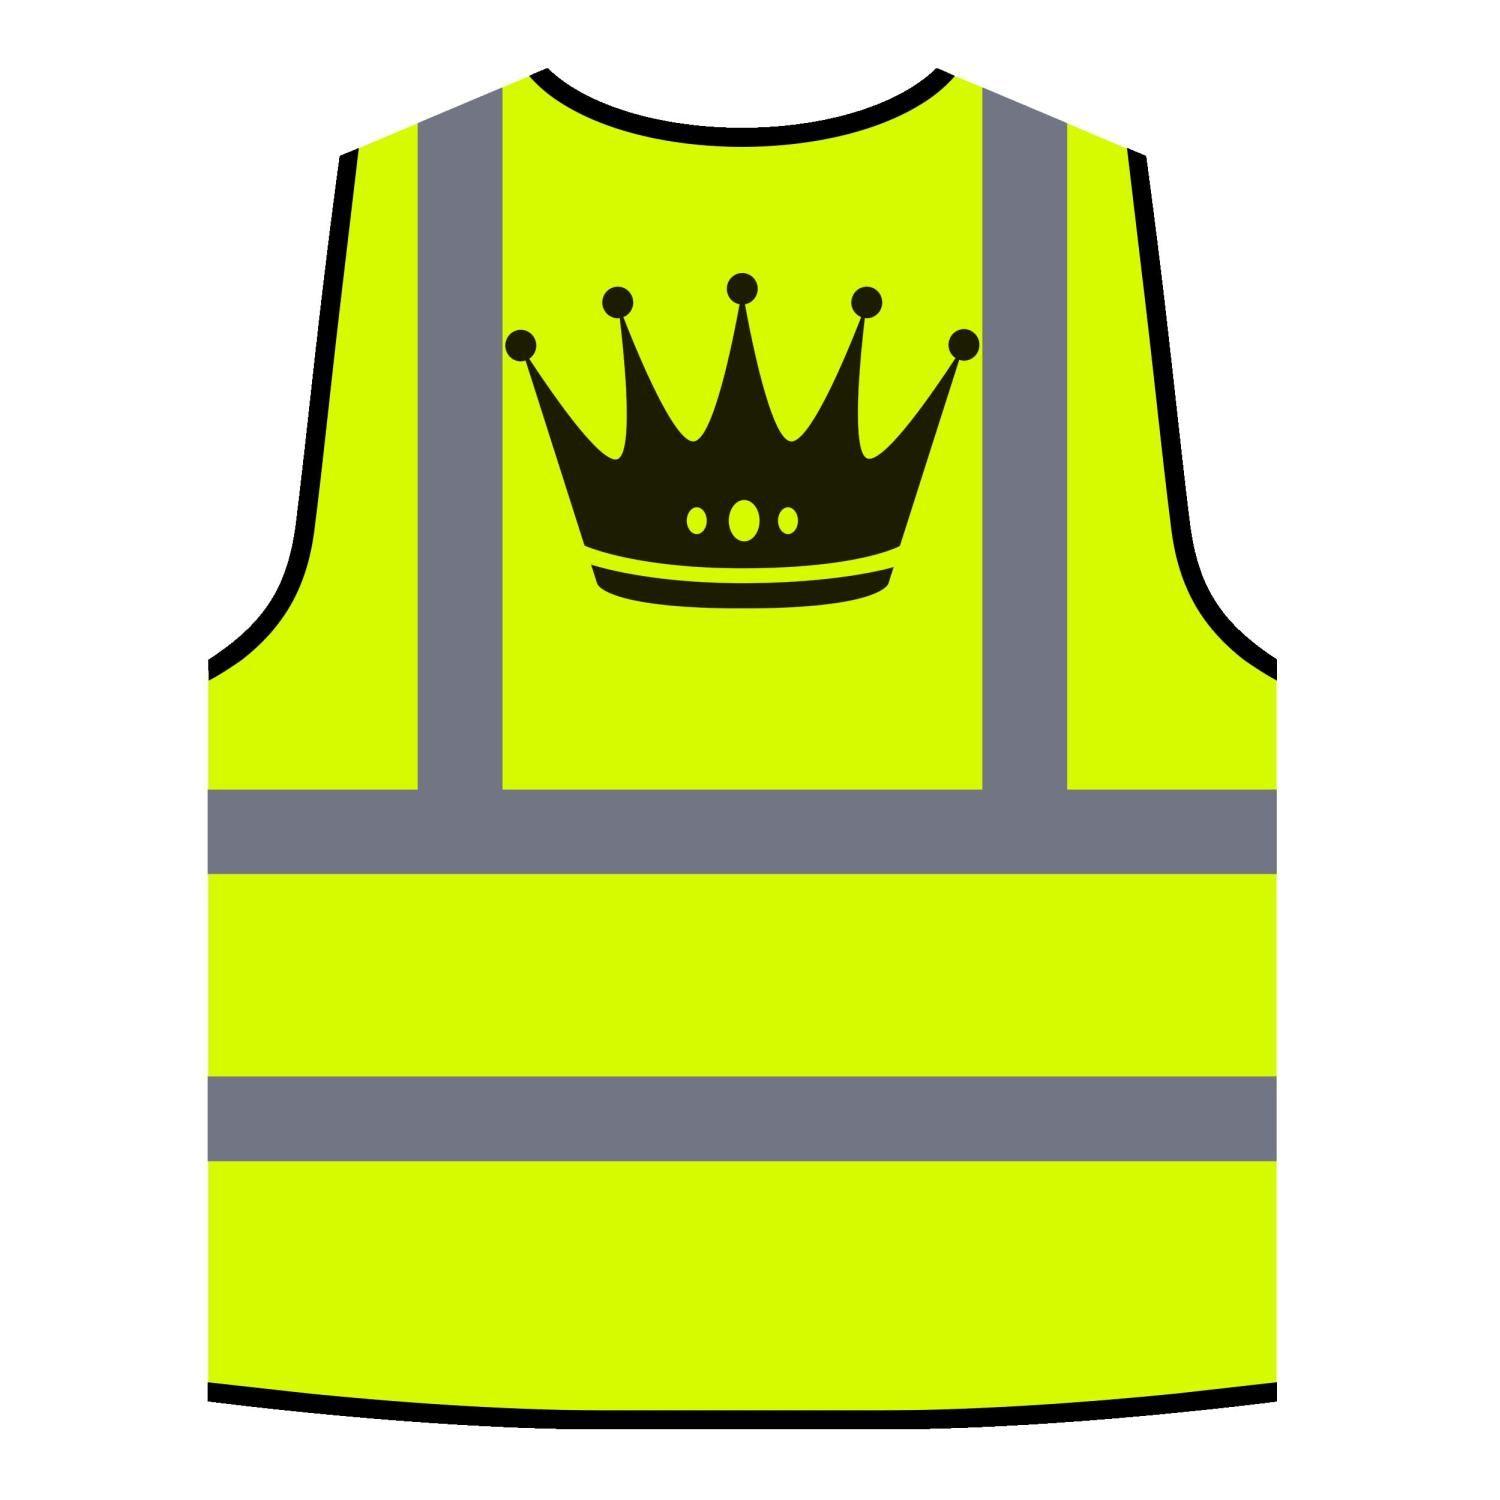 Funny Orange Logo - Crown King Queen Art Funny Novelty Yellow/Orange Safety Vest a579v ...